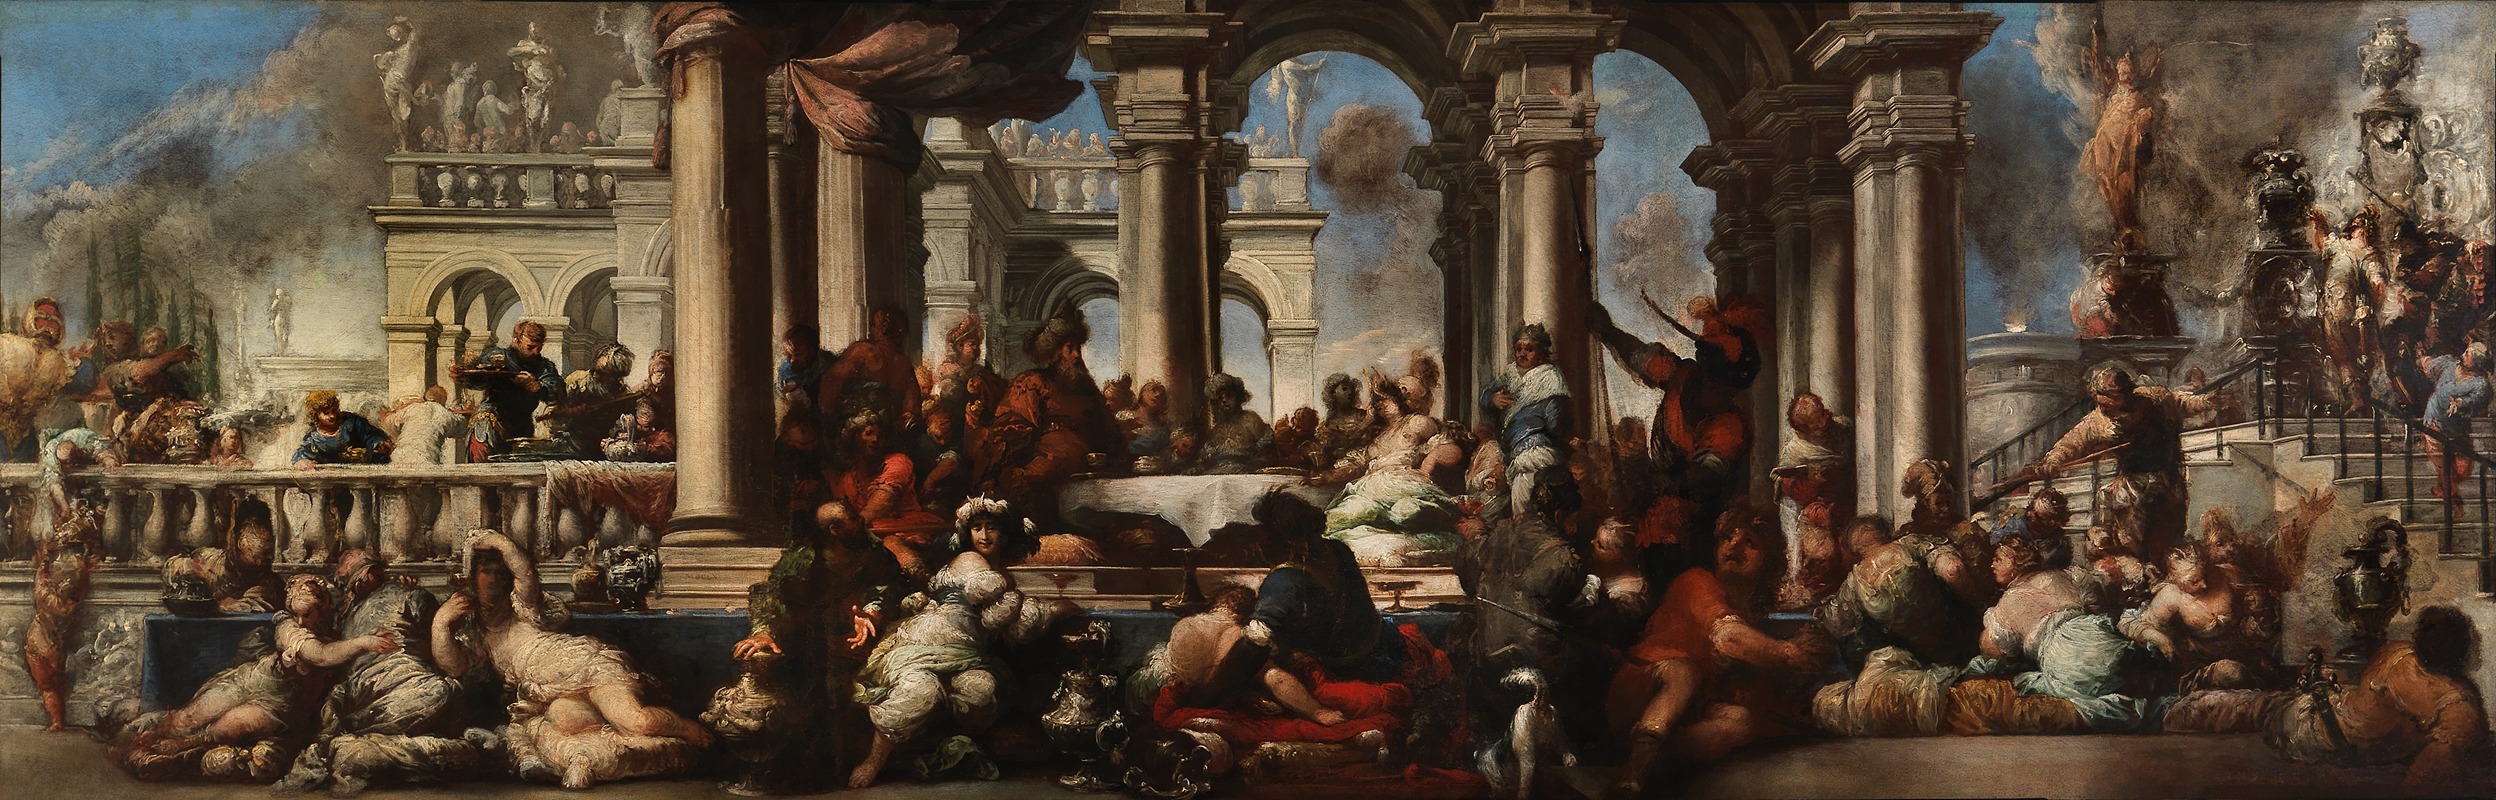 Sebastiano Mazzoni - The Banquet of Cleopatra